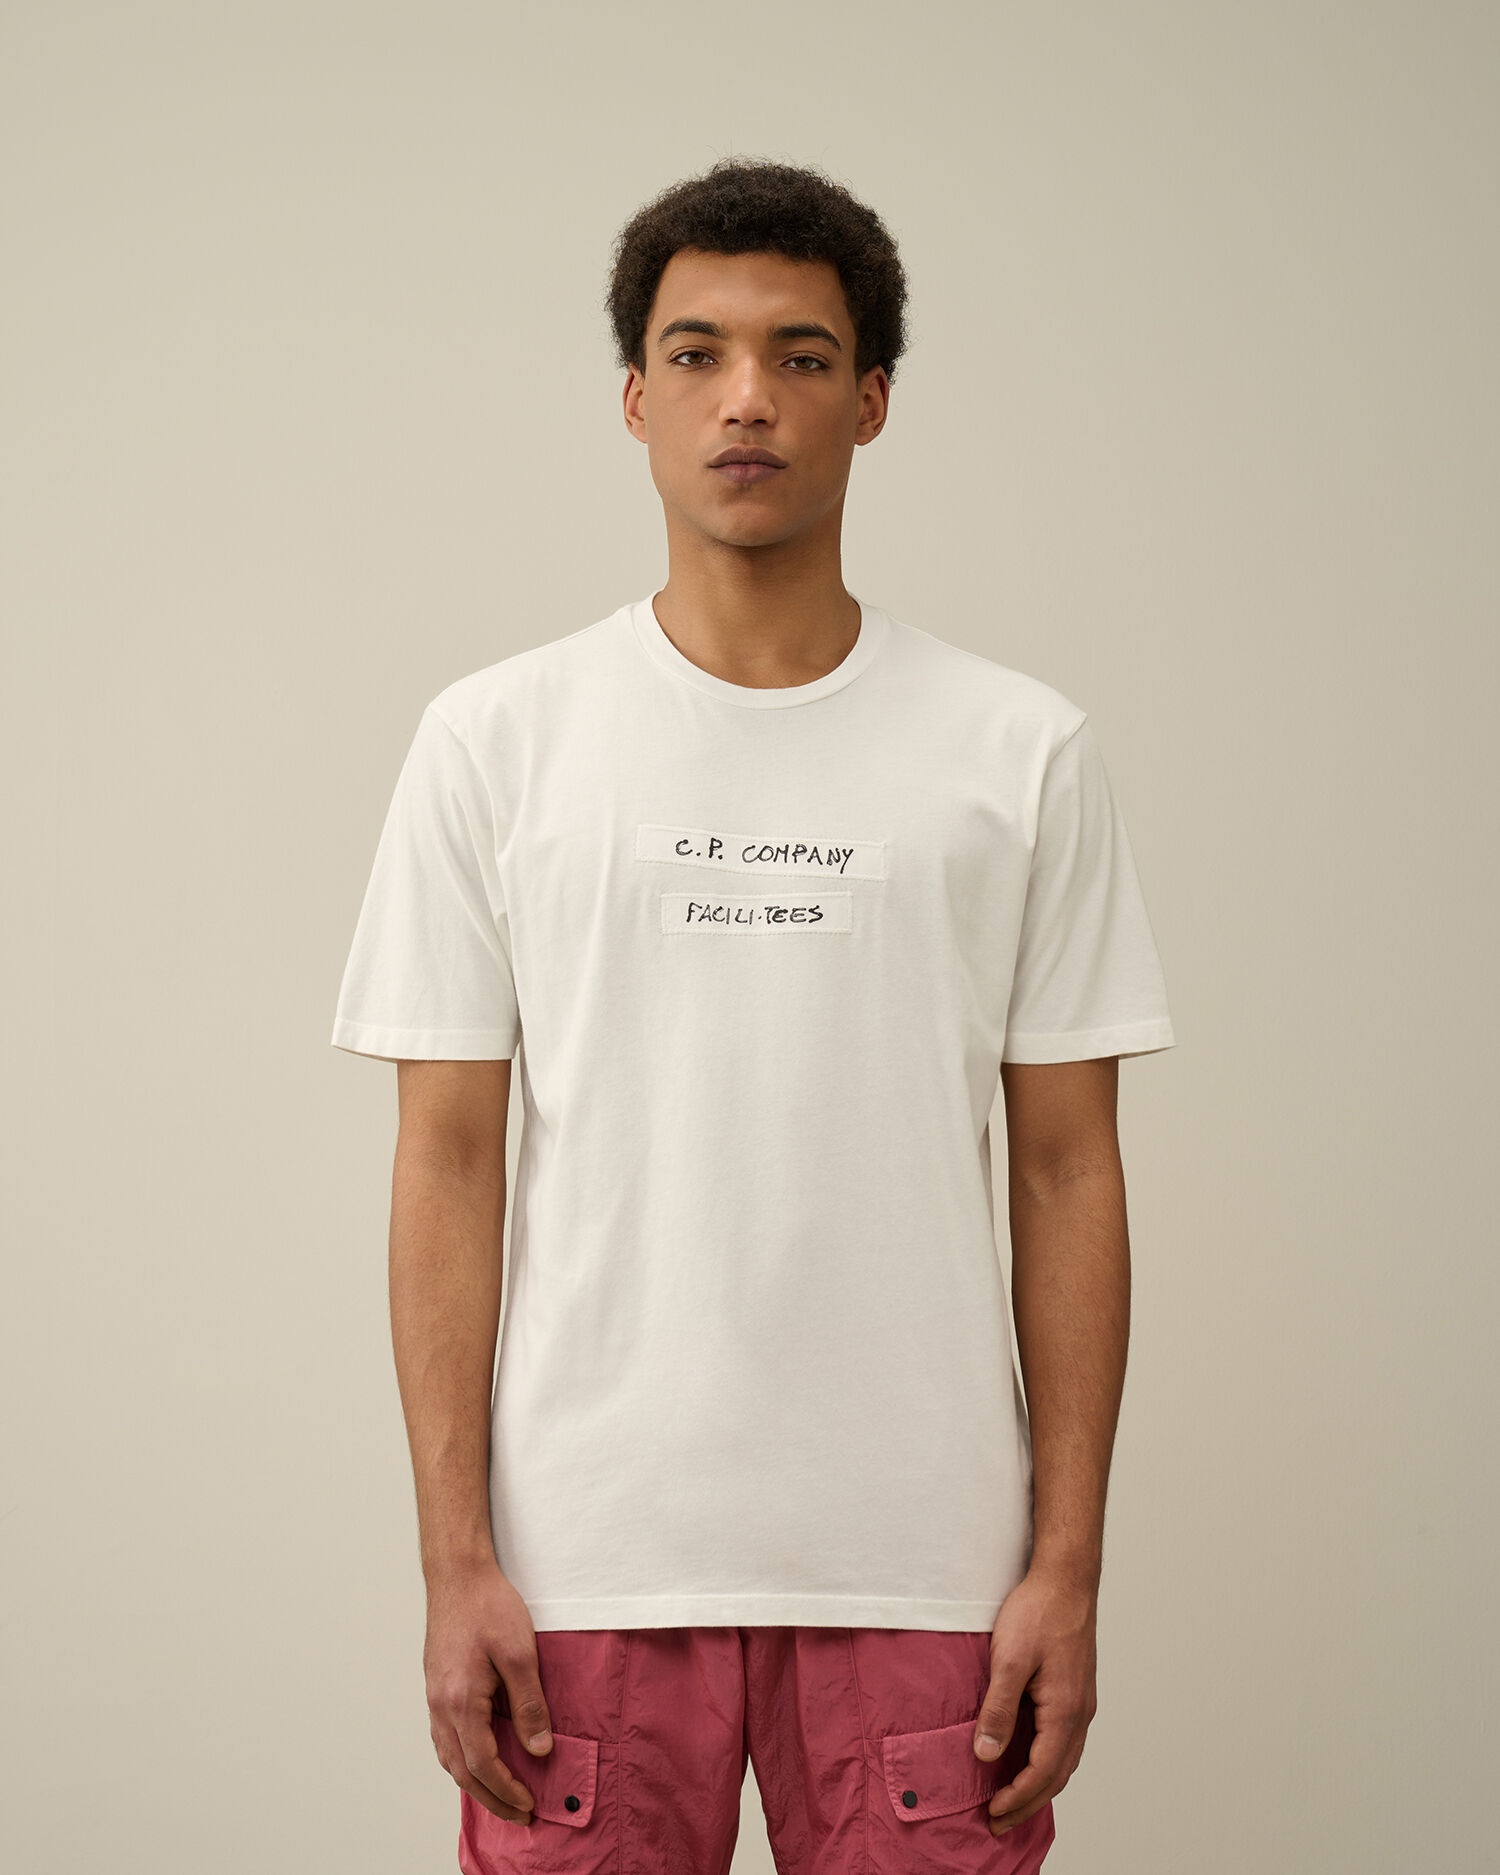 24/1 Jersey Facili-Tees Graphic T-shirt - 3